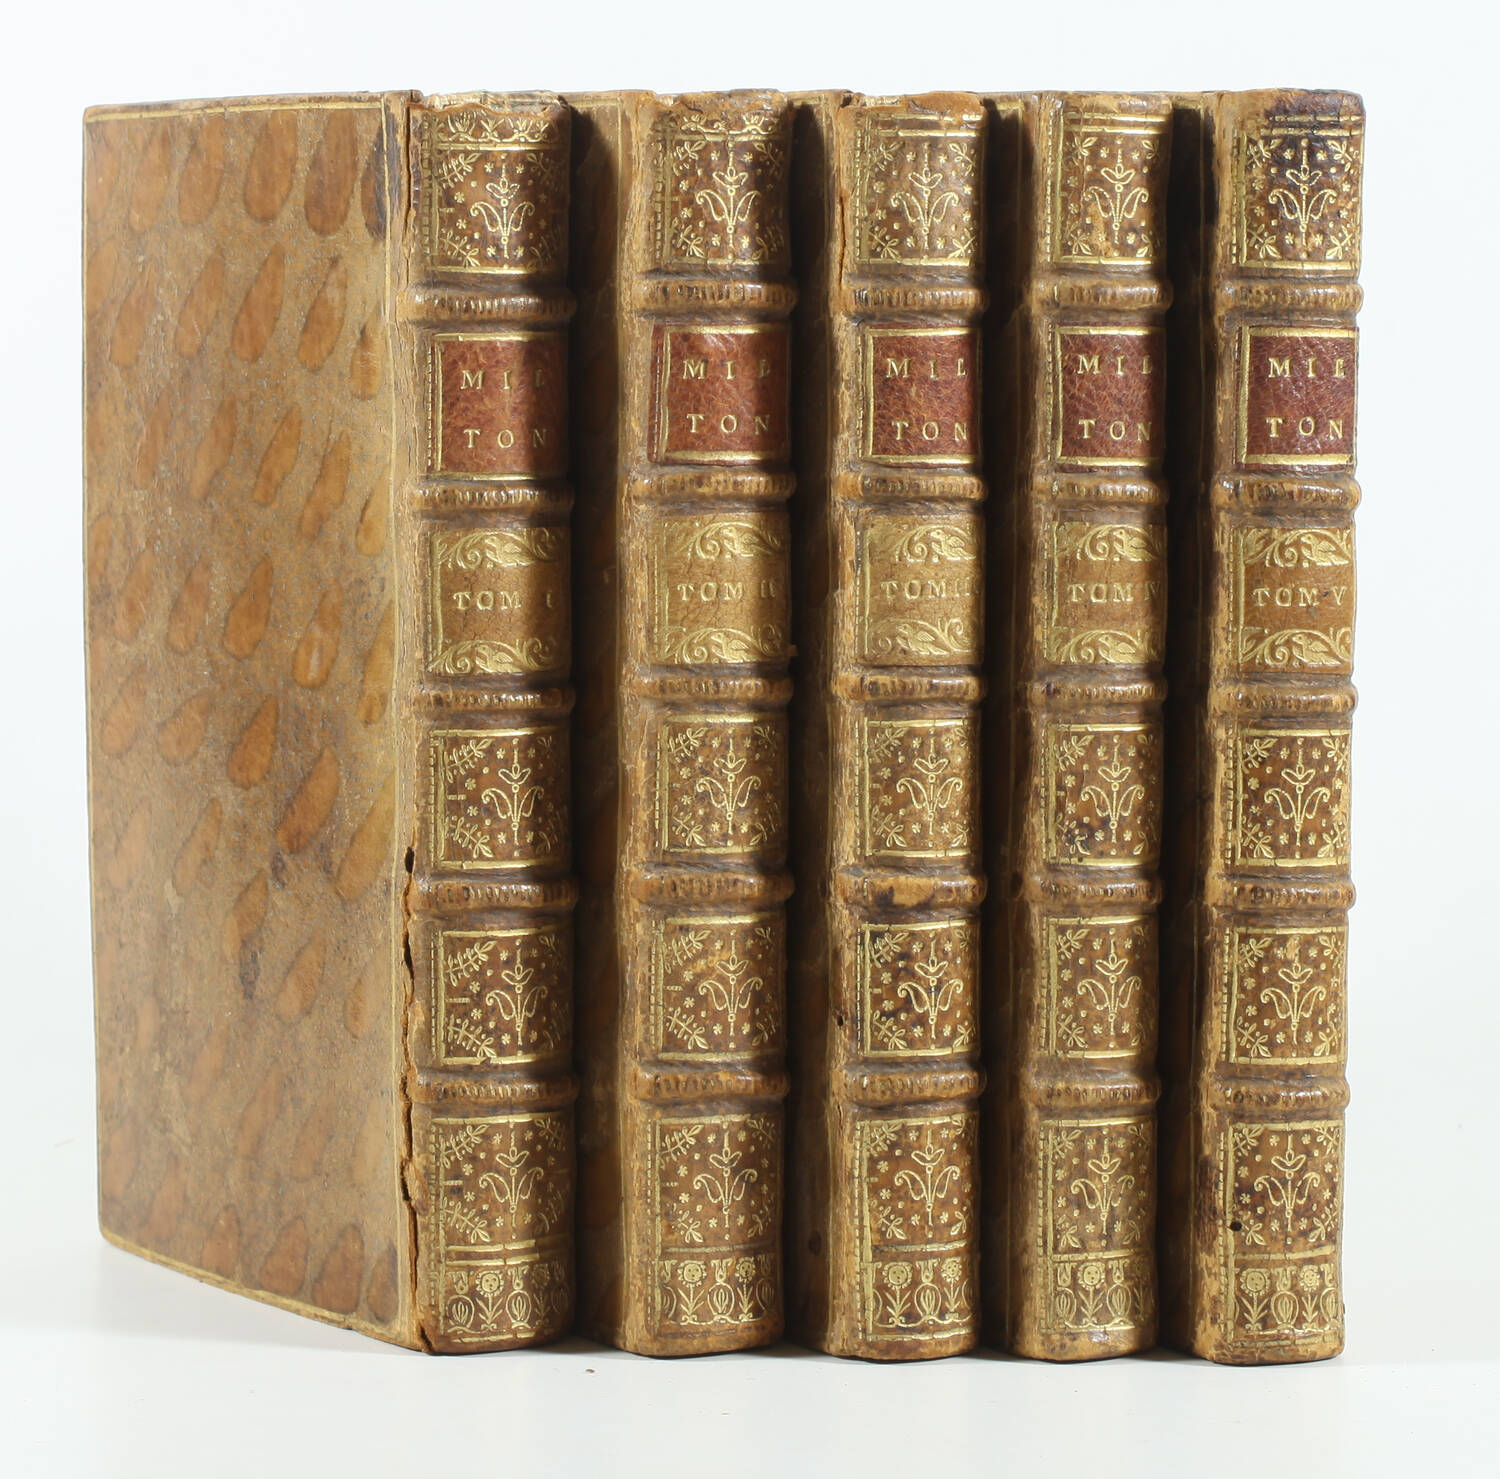 Milton - Le paradis perdu + reconquis + critique 1729-1731 - 5 volumes uniformes - Photo 2, livre ancien du XVIIIe siècle